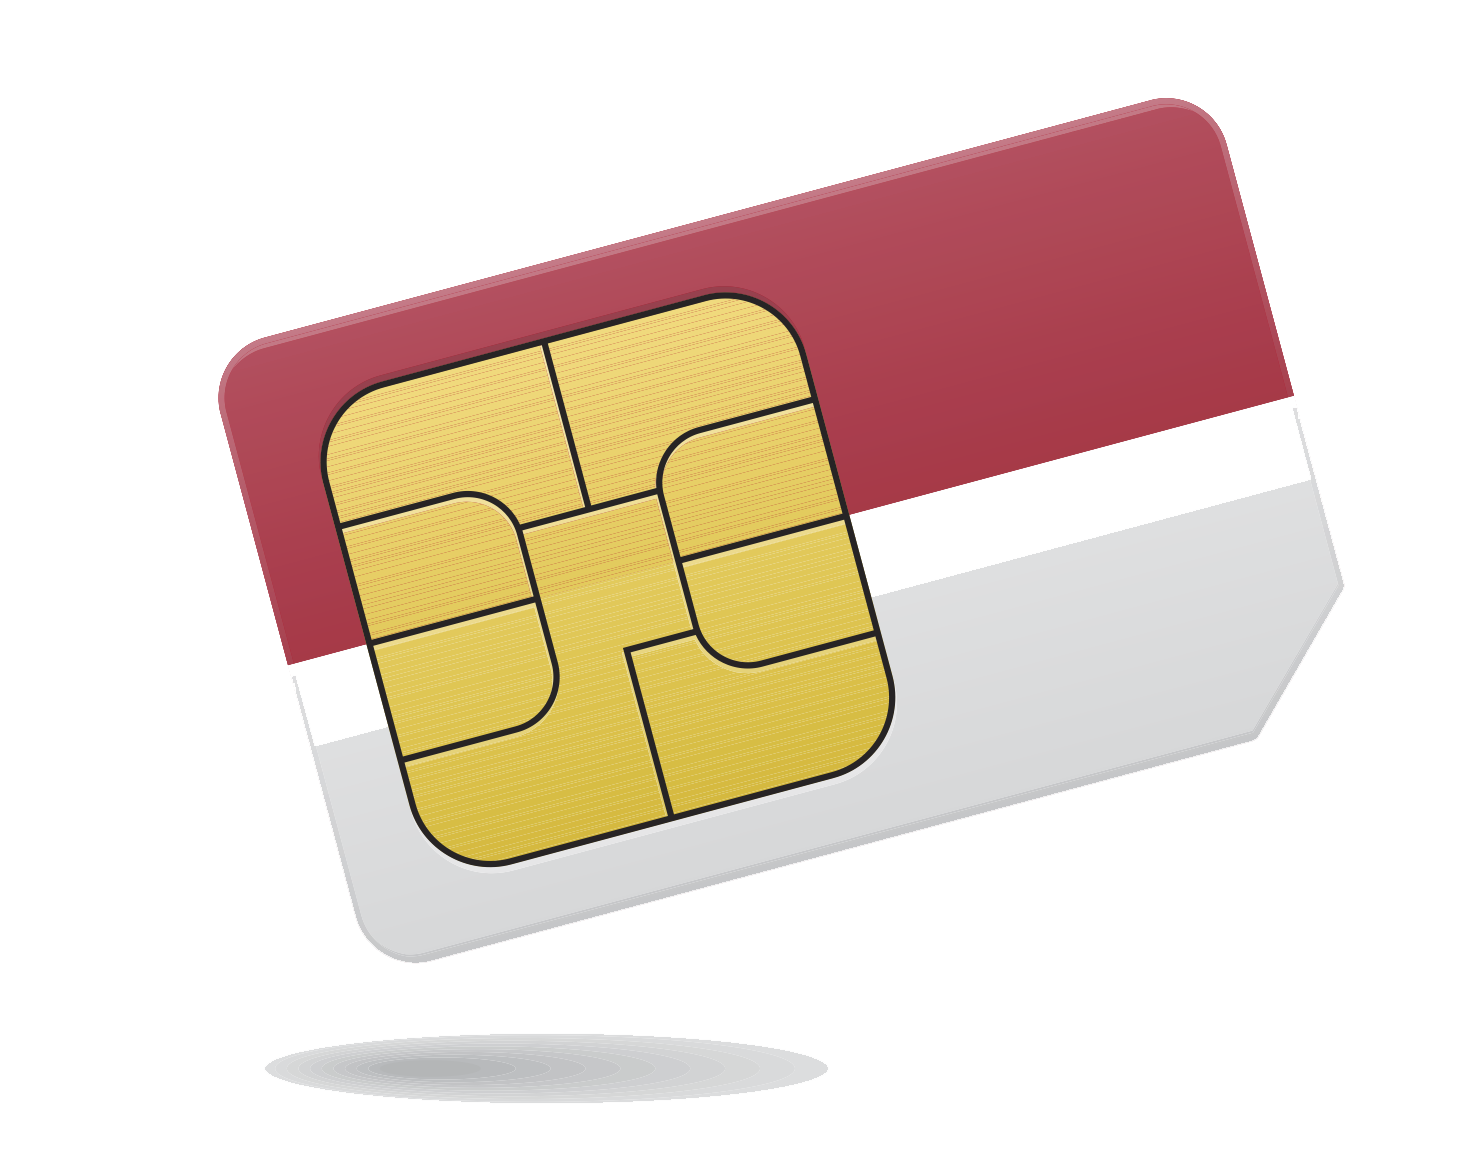 free-sim-card-png-transparent-images-download-free-sim-card-png